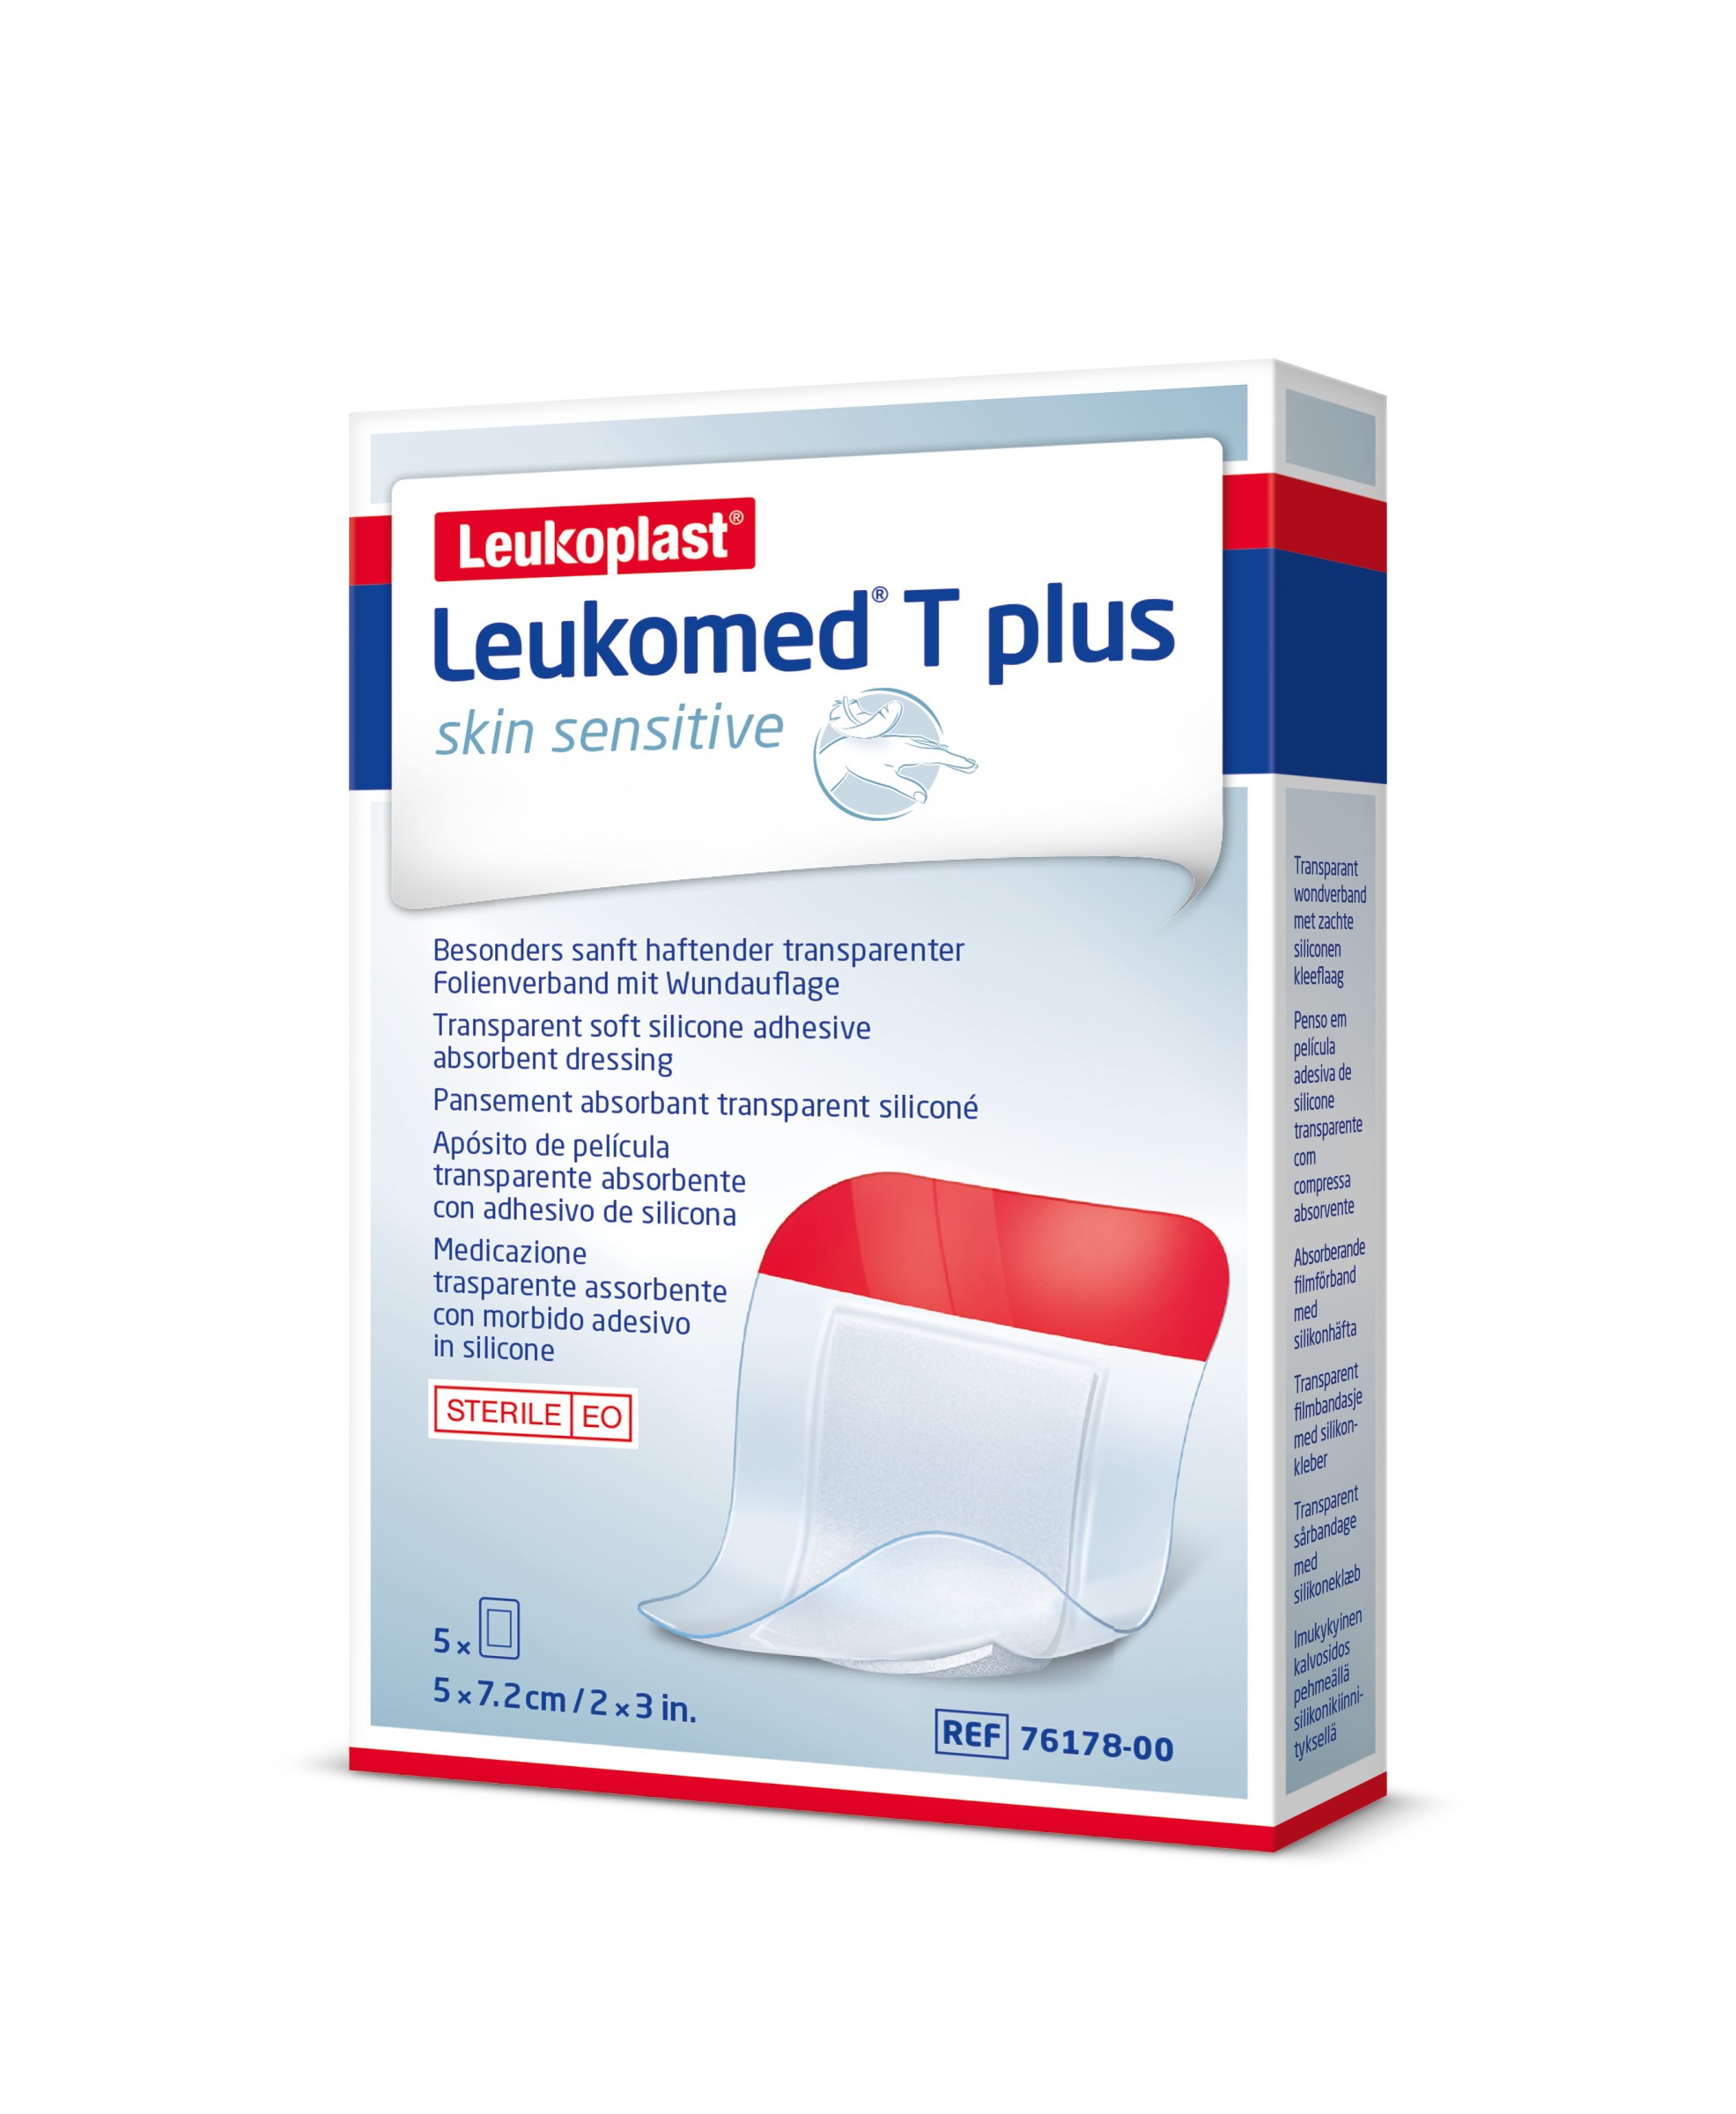 Leukomed ® T plus skin sensitive